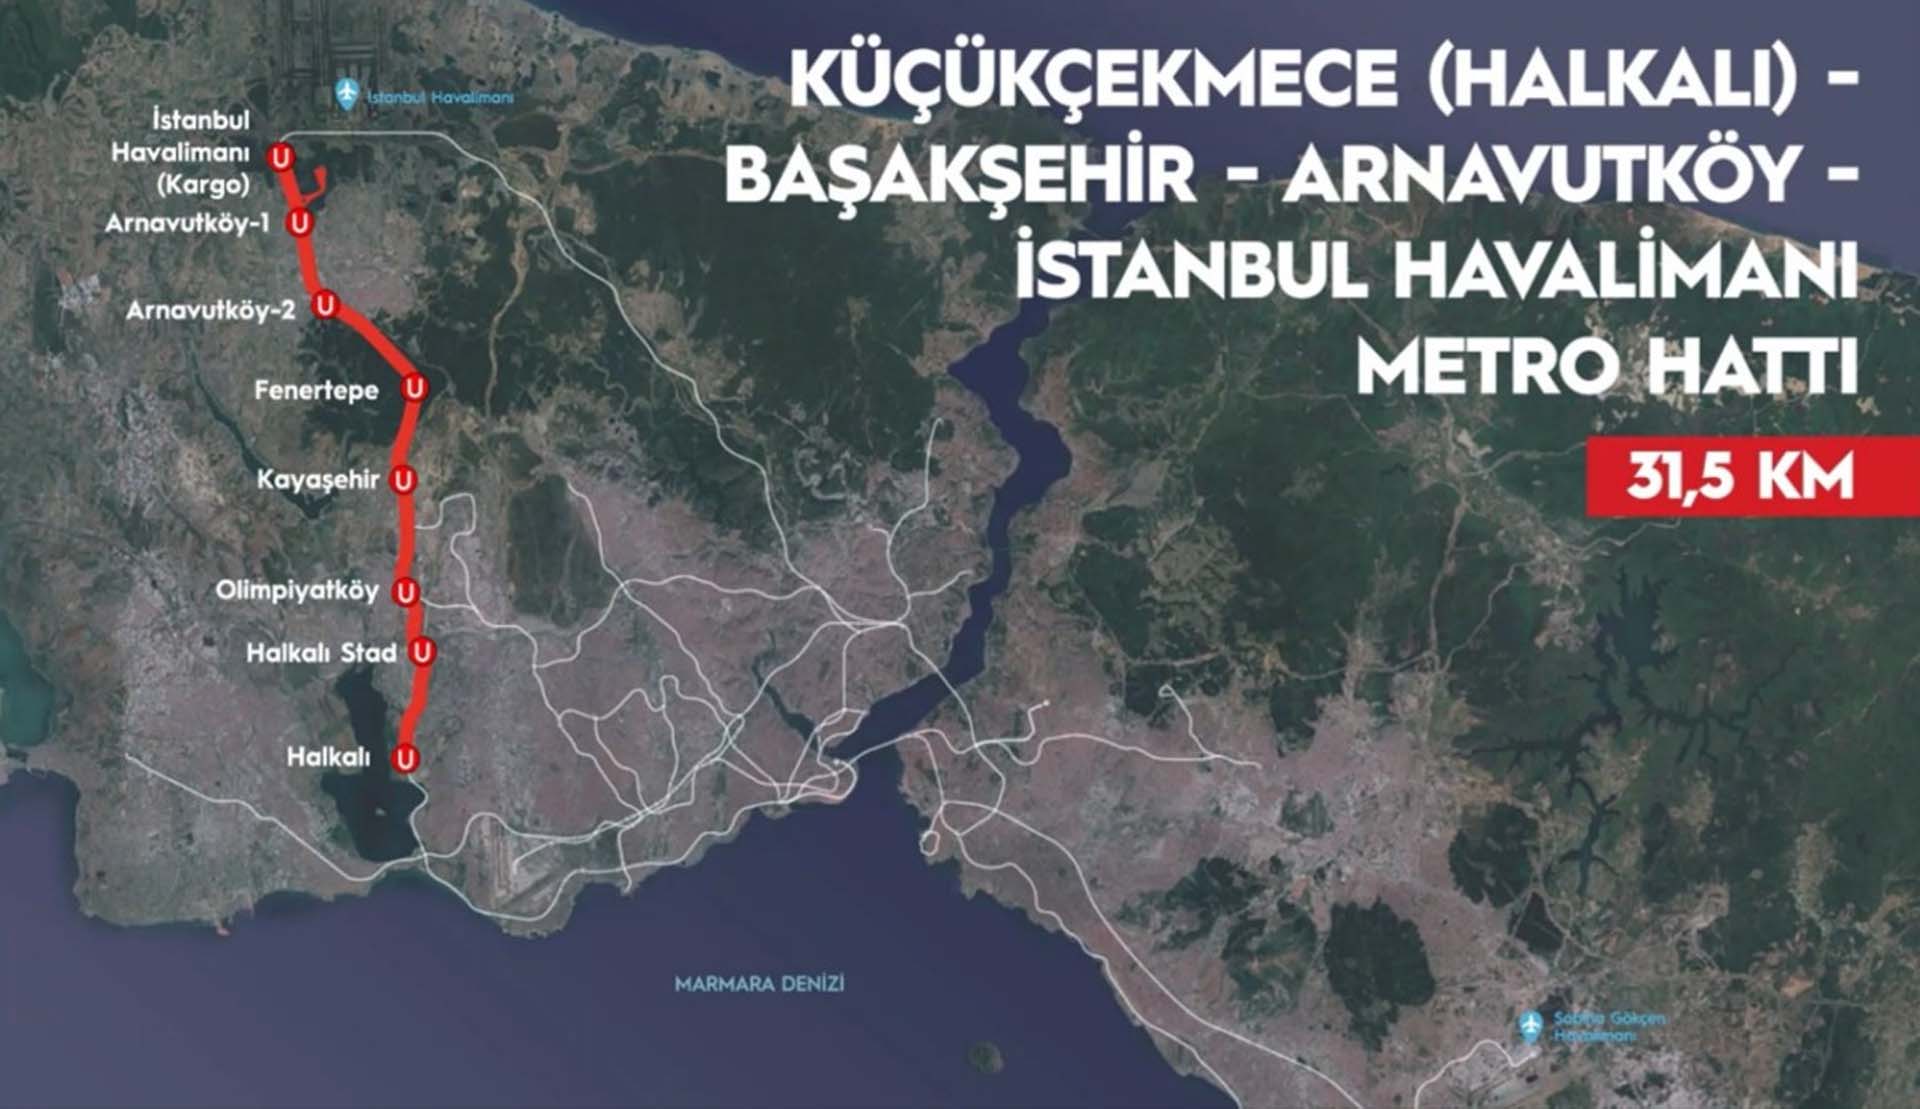 Halkalı-İstanbul Yeni Havalimanı Metro Hattı'nda çalışmalar tamamlandı